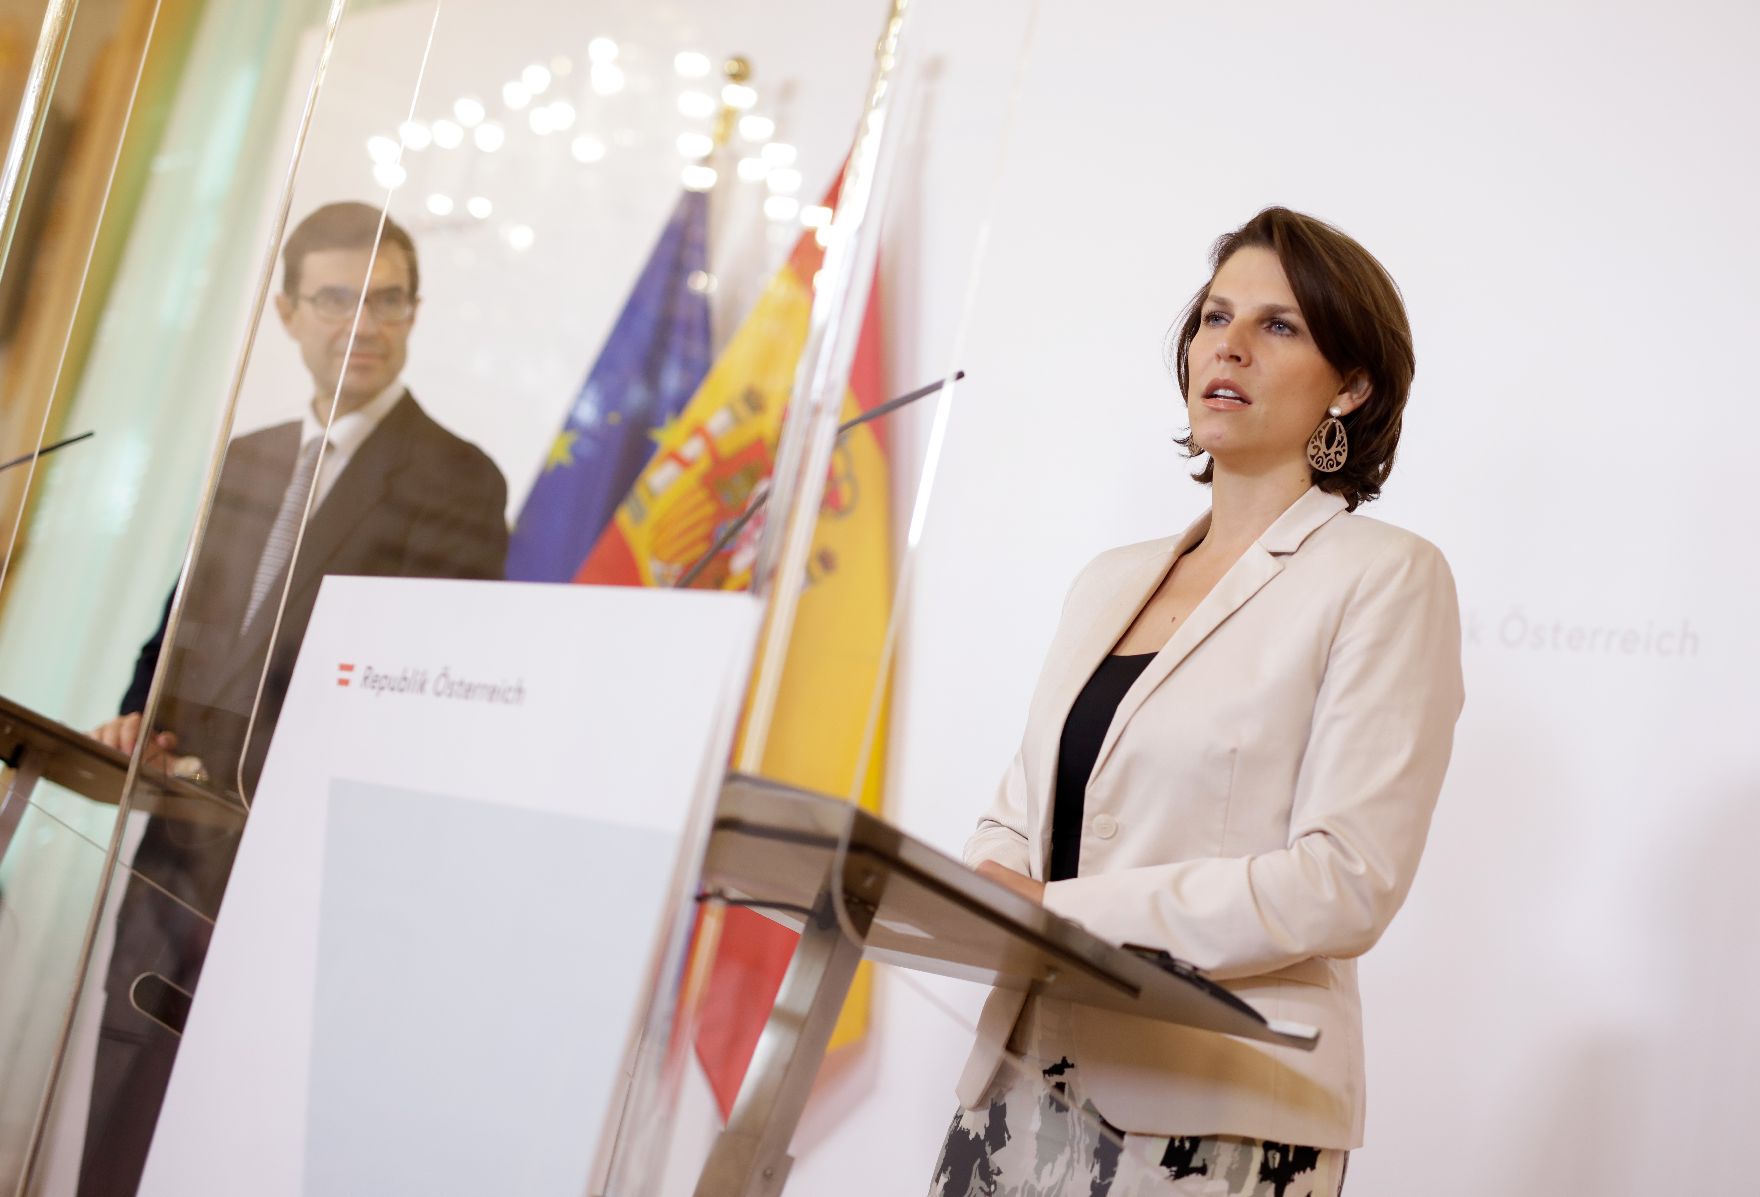 Am 28. Oktober 2020 empfing Bundesministerin Karoline Edtstadler (r.) den spanischen Staatssekretär für die Europäische Union Juan González-Barba Pera (l.) zu einem Arbeitsgespräch im Bundeskanzleramt. Im Bild bei einer gemeinsamen Pressekonferenz.